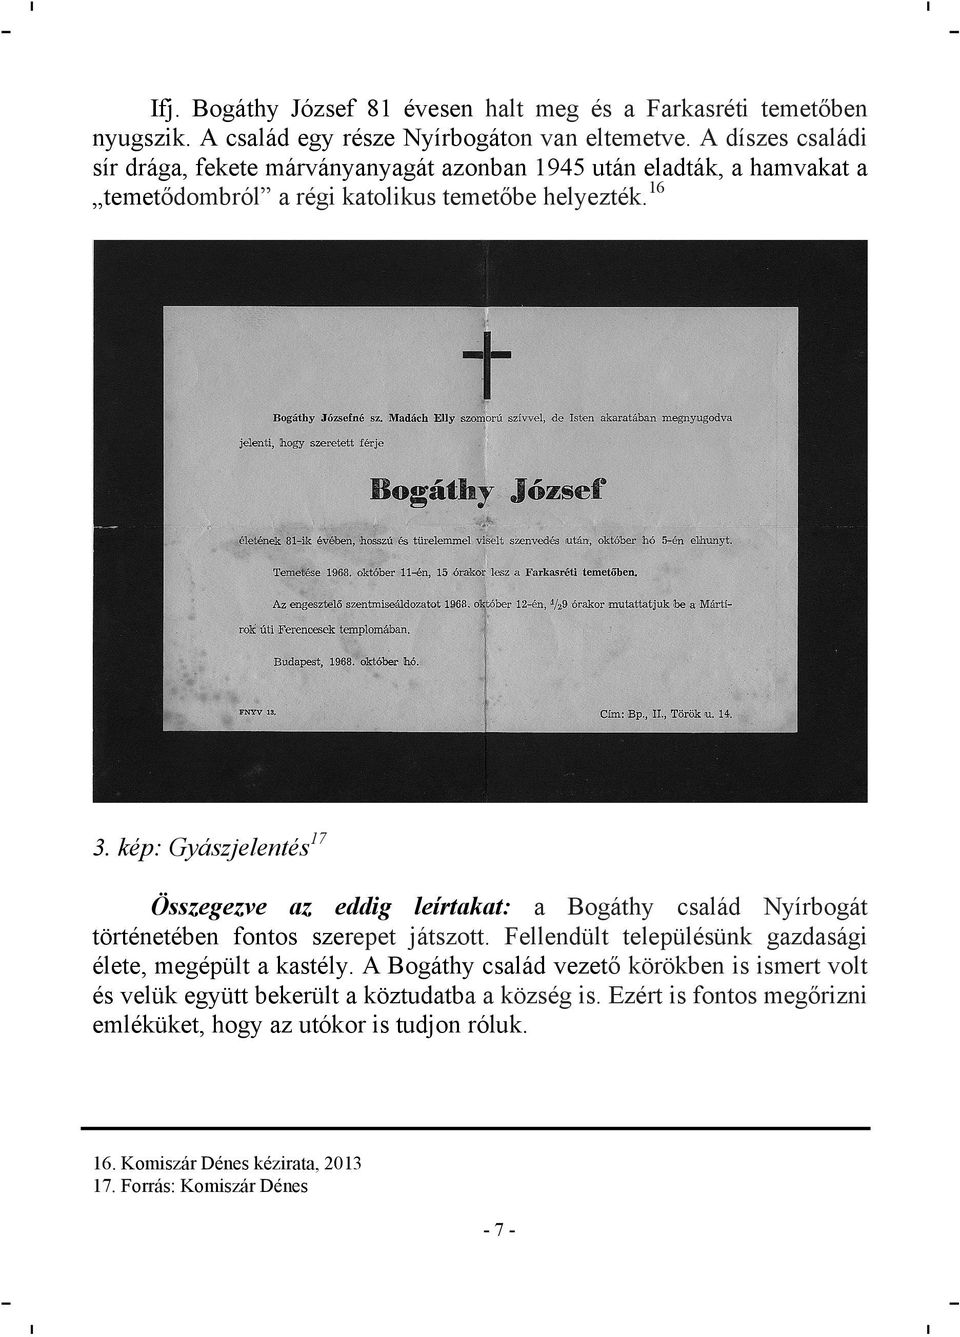 kép: Gyászjelentés17 Összegezve az eddig leírtakat: a Bogáthy család Nyírbogát történetében fontos szerepet játszott.